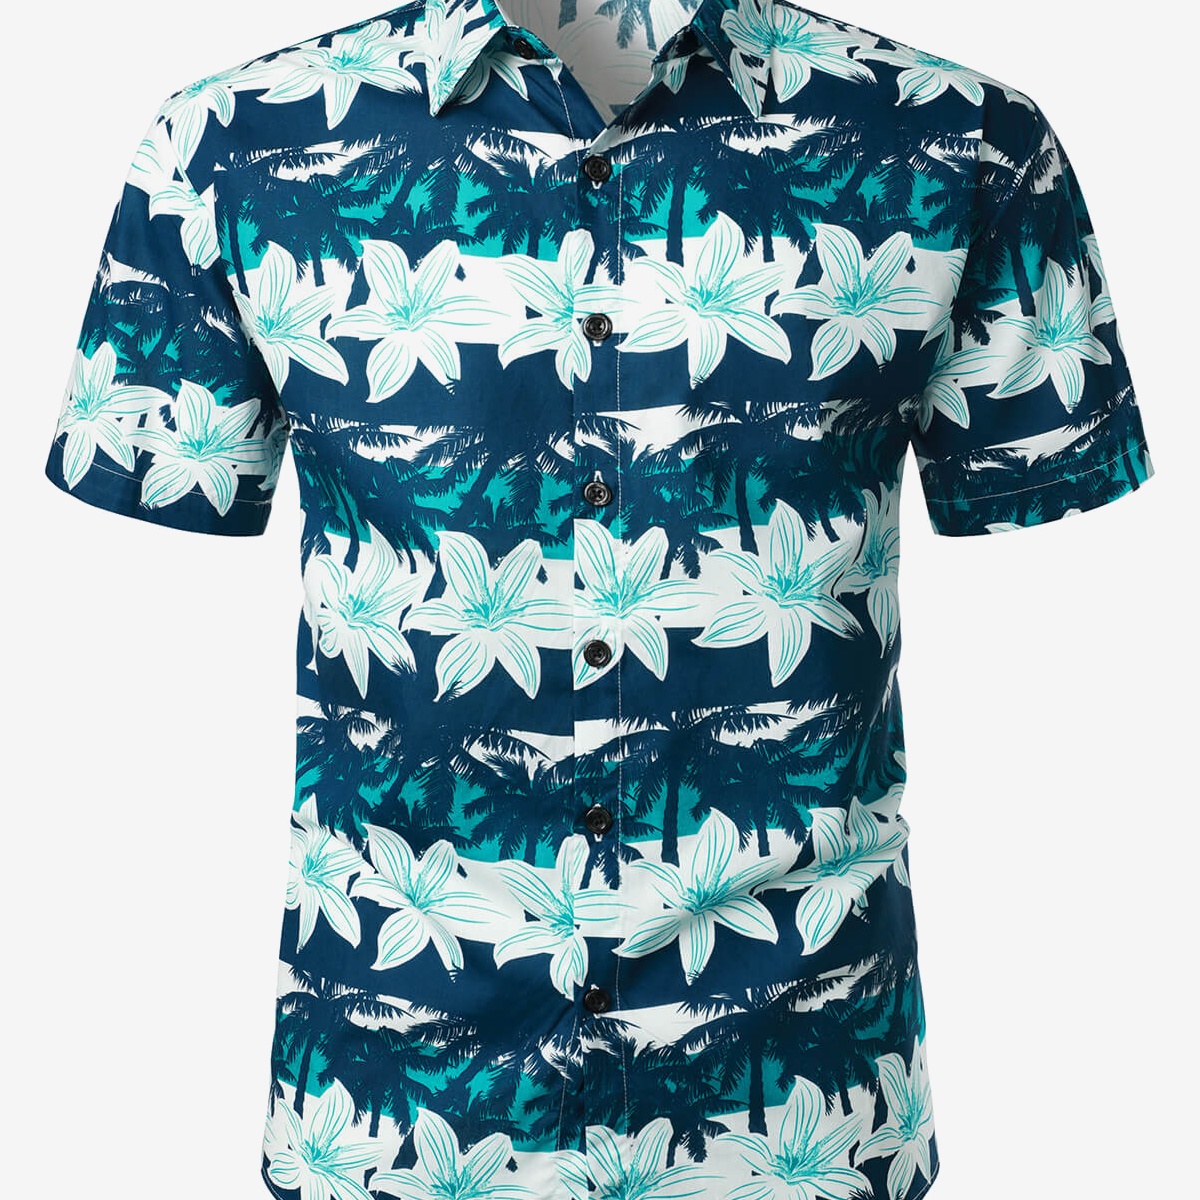 Camisa hawaiana de manga corta de algodón fresco con flores de verano, playa, vacaciones, floral, casual, con botones